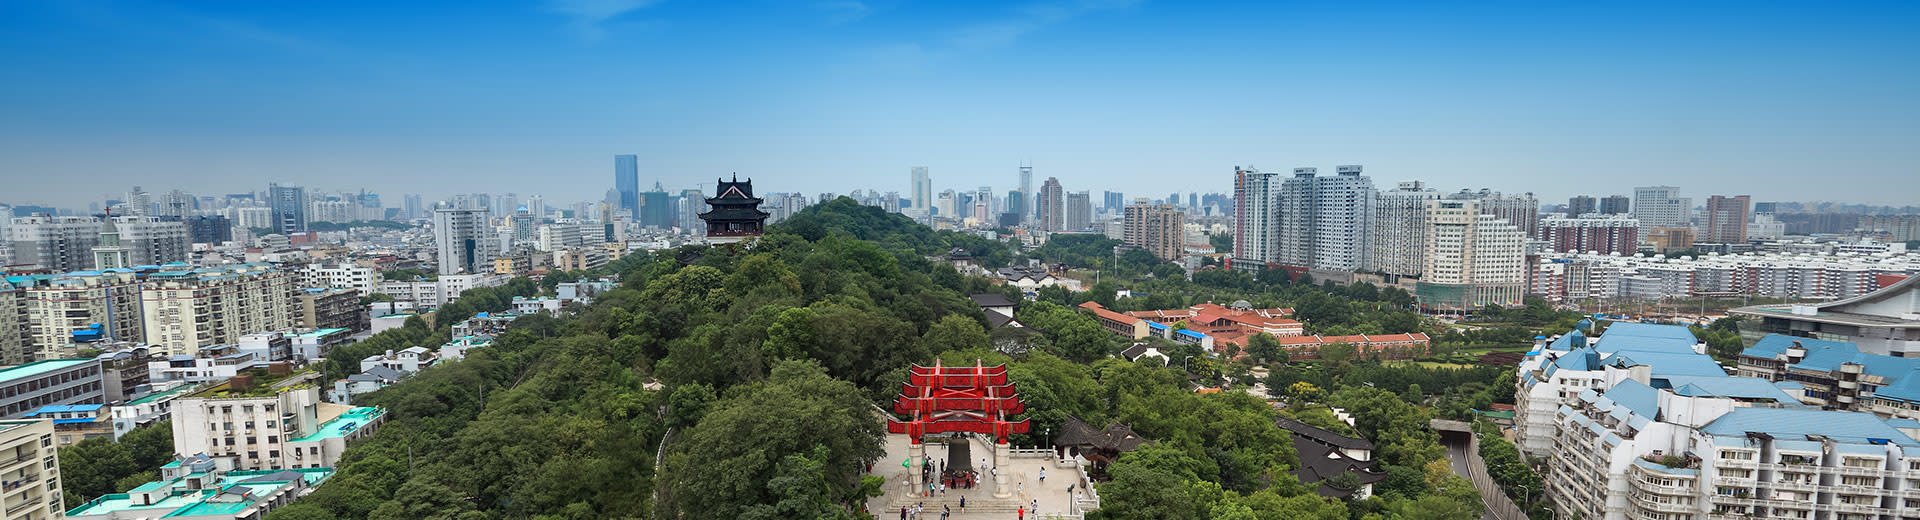 Blauer Himmel über einem grünen Park und der weitläufigen Stadt Wuhan.